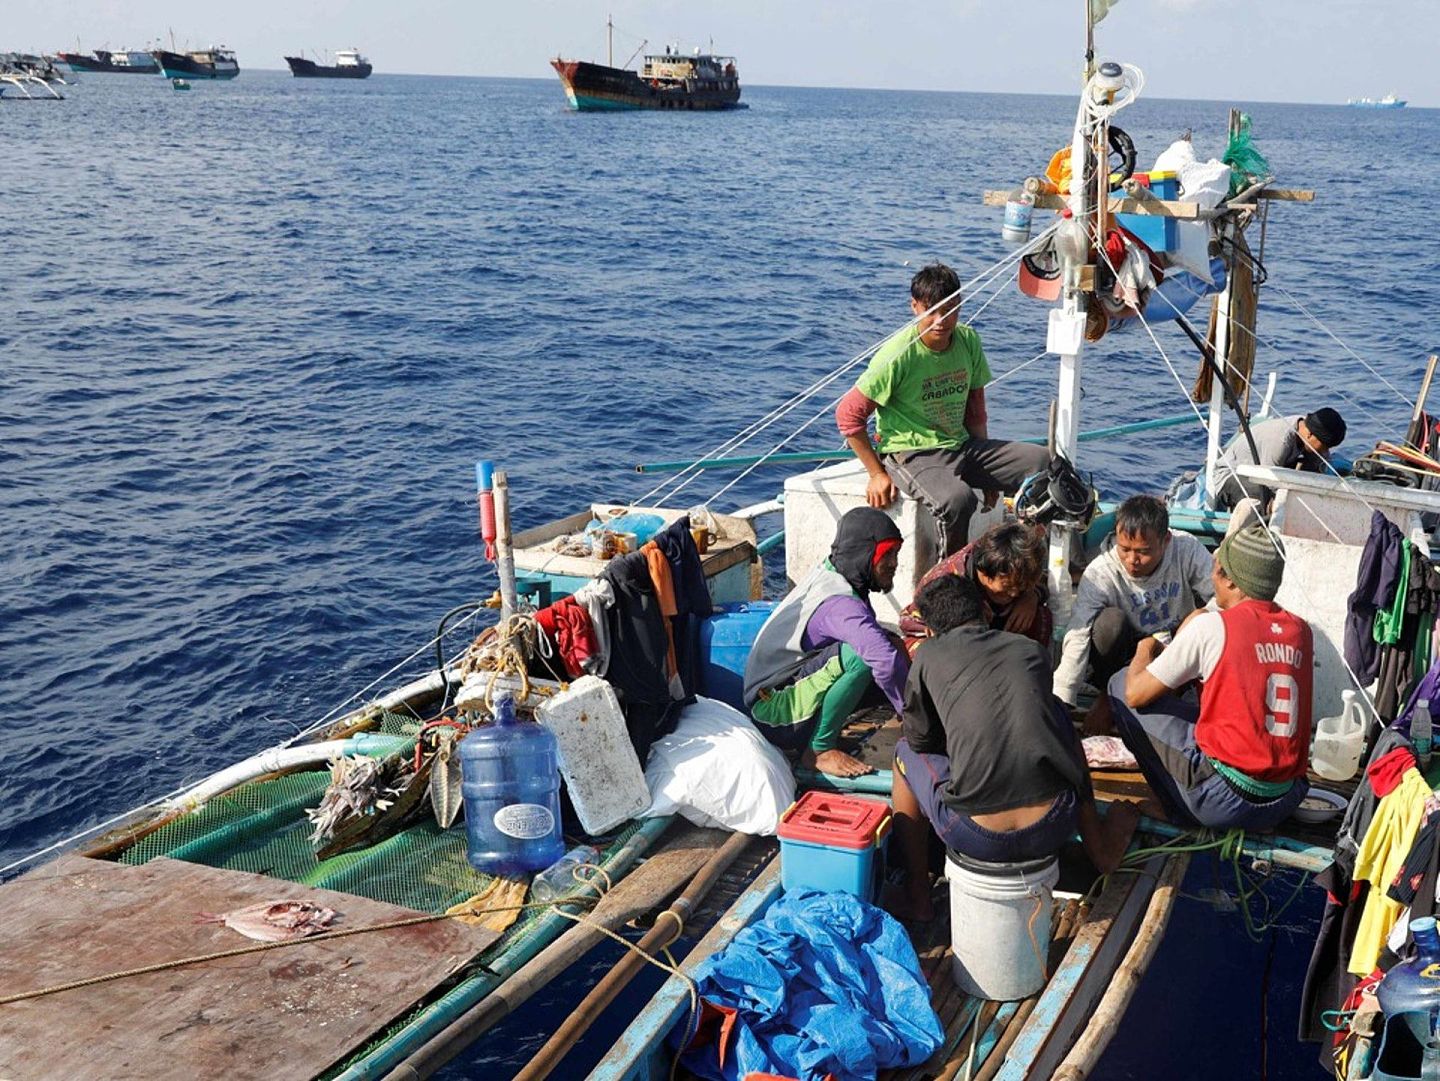 菲律宾总统杜特尔特（Rodrigo Duterte）上台后，请求解禁菲渔民赴黄岩岛捕鱼获中国同意。（Reuters）